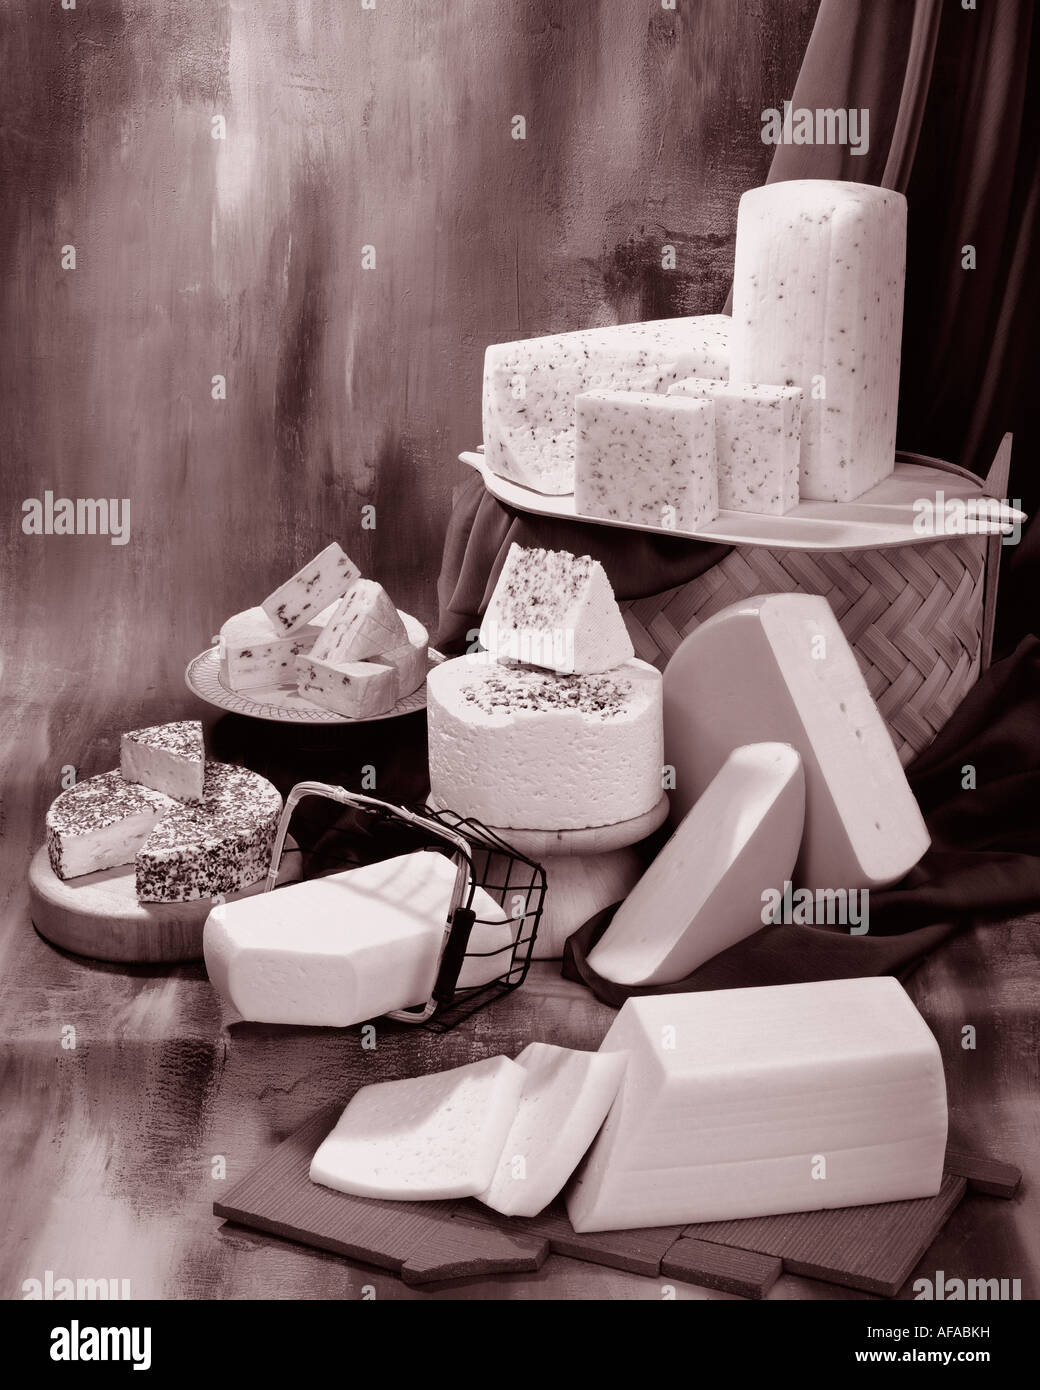 Dänischer Käse in Sepia von Gruppenfoto auf Warm getönten gesprenkelte Hintergrund. Hochformat, Studio Tischplatte. Klassisches Bild. Stockfoto